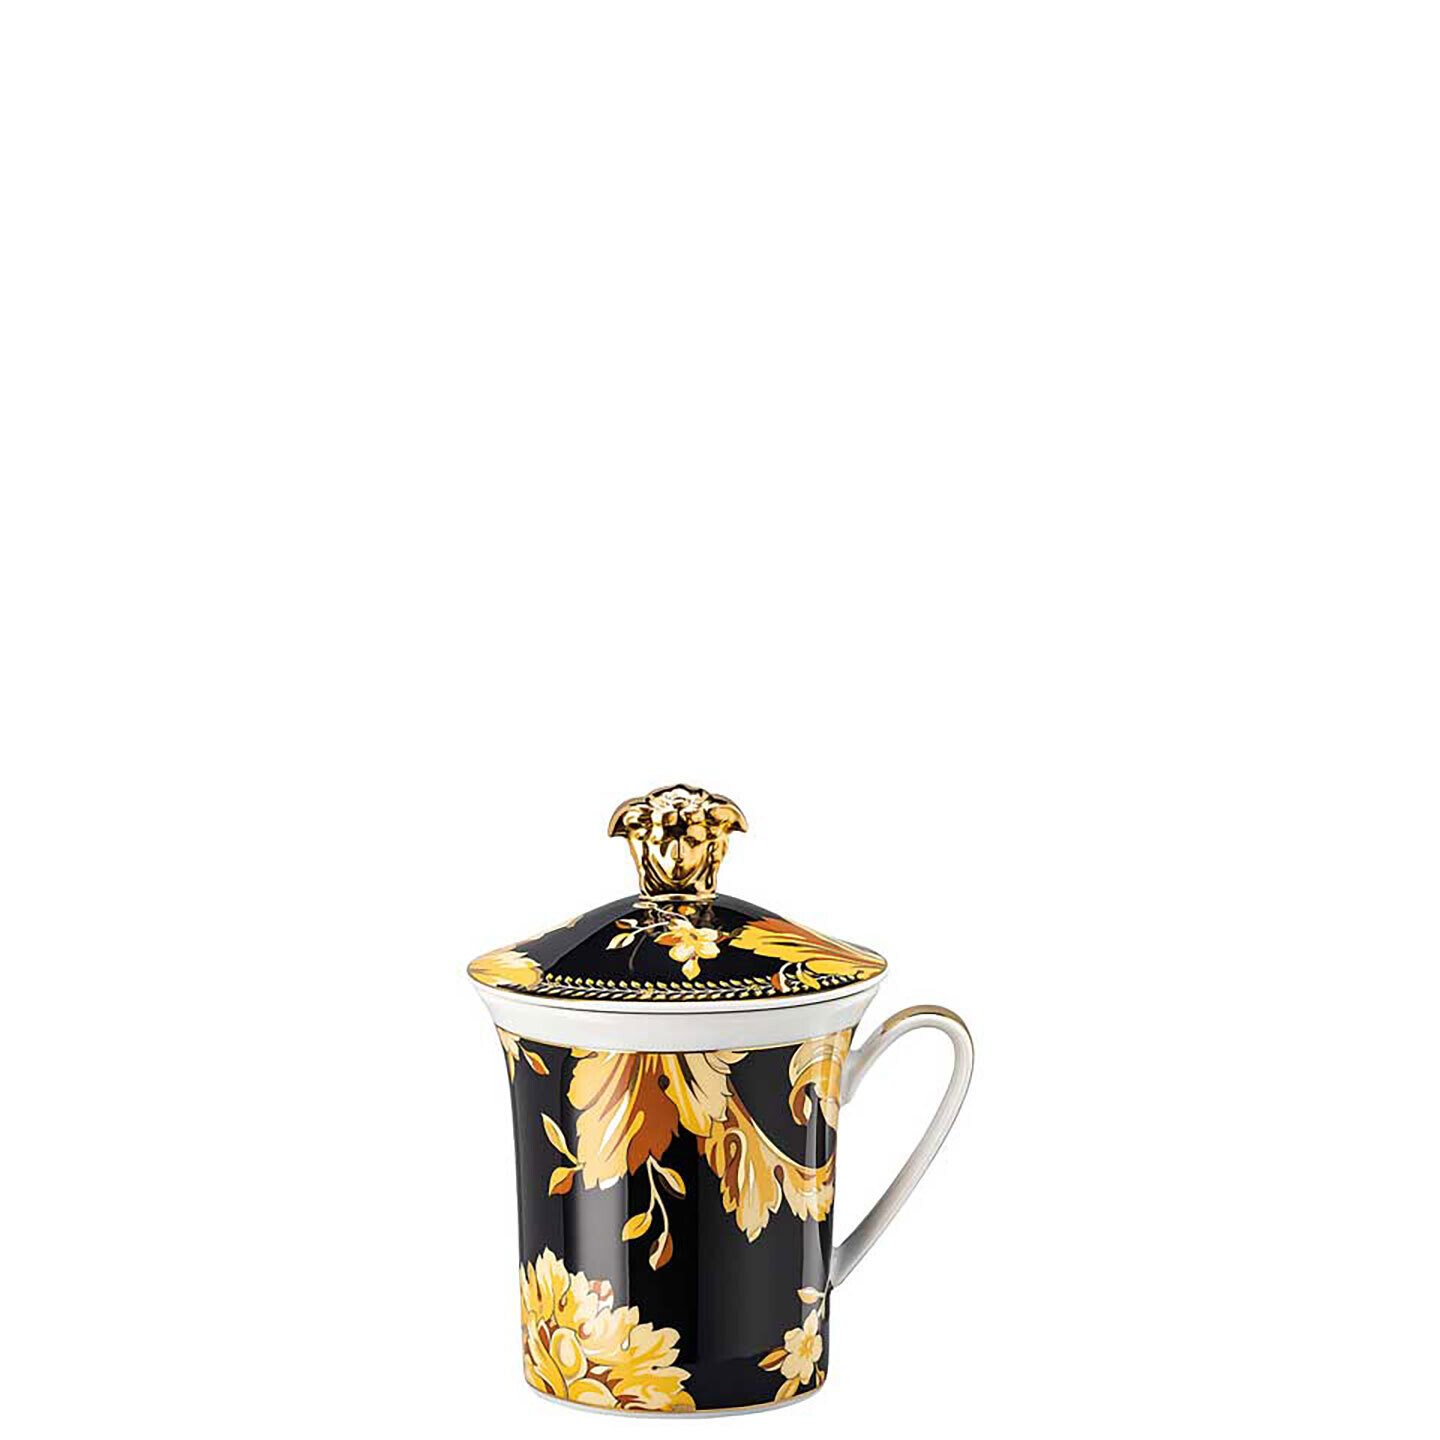 Versace 30 Years Vanity Mug with Lid 19315-403608-28700